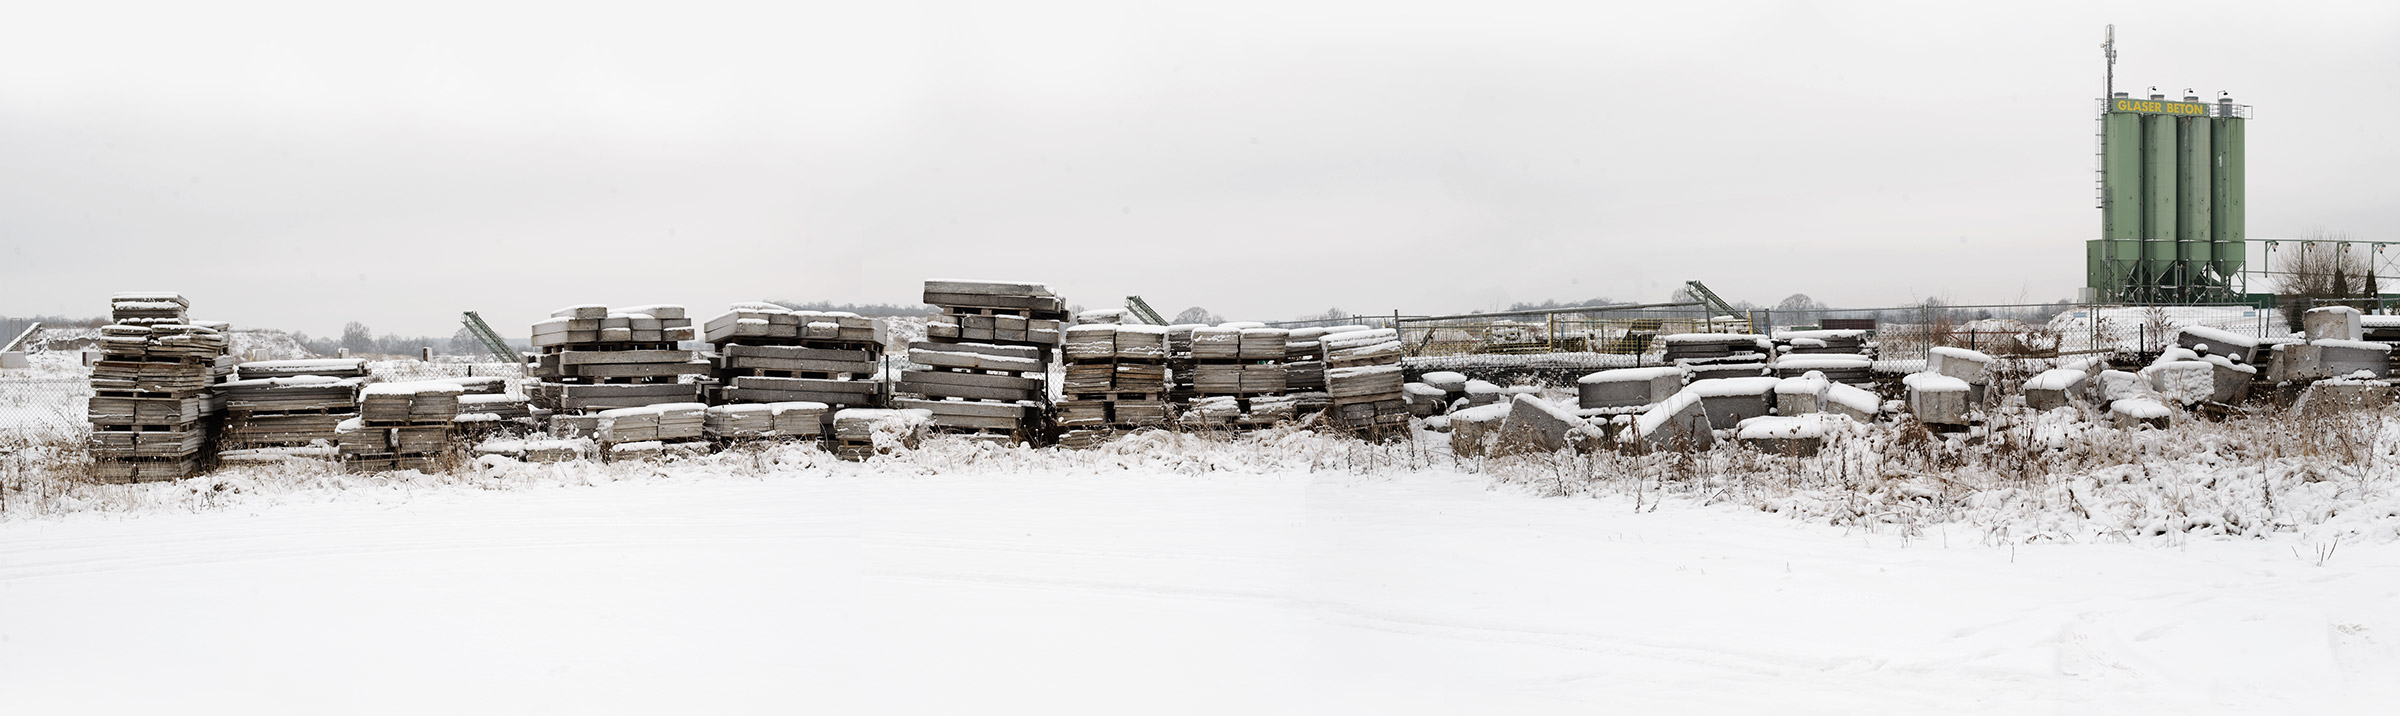 Hunderte Granitplatten liegen schneebedeckt in einem Lager